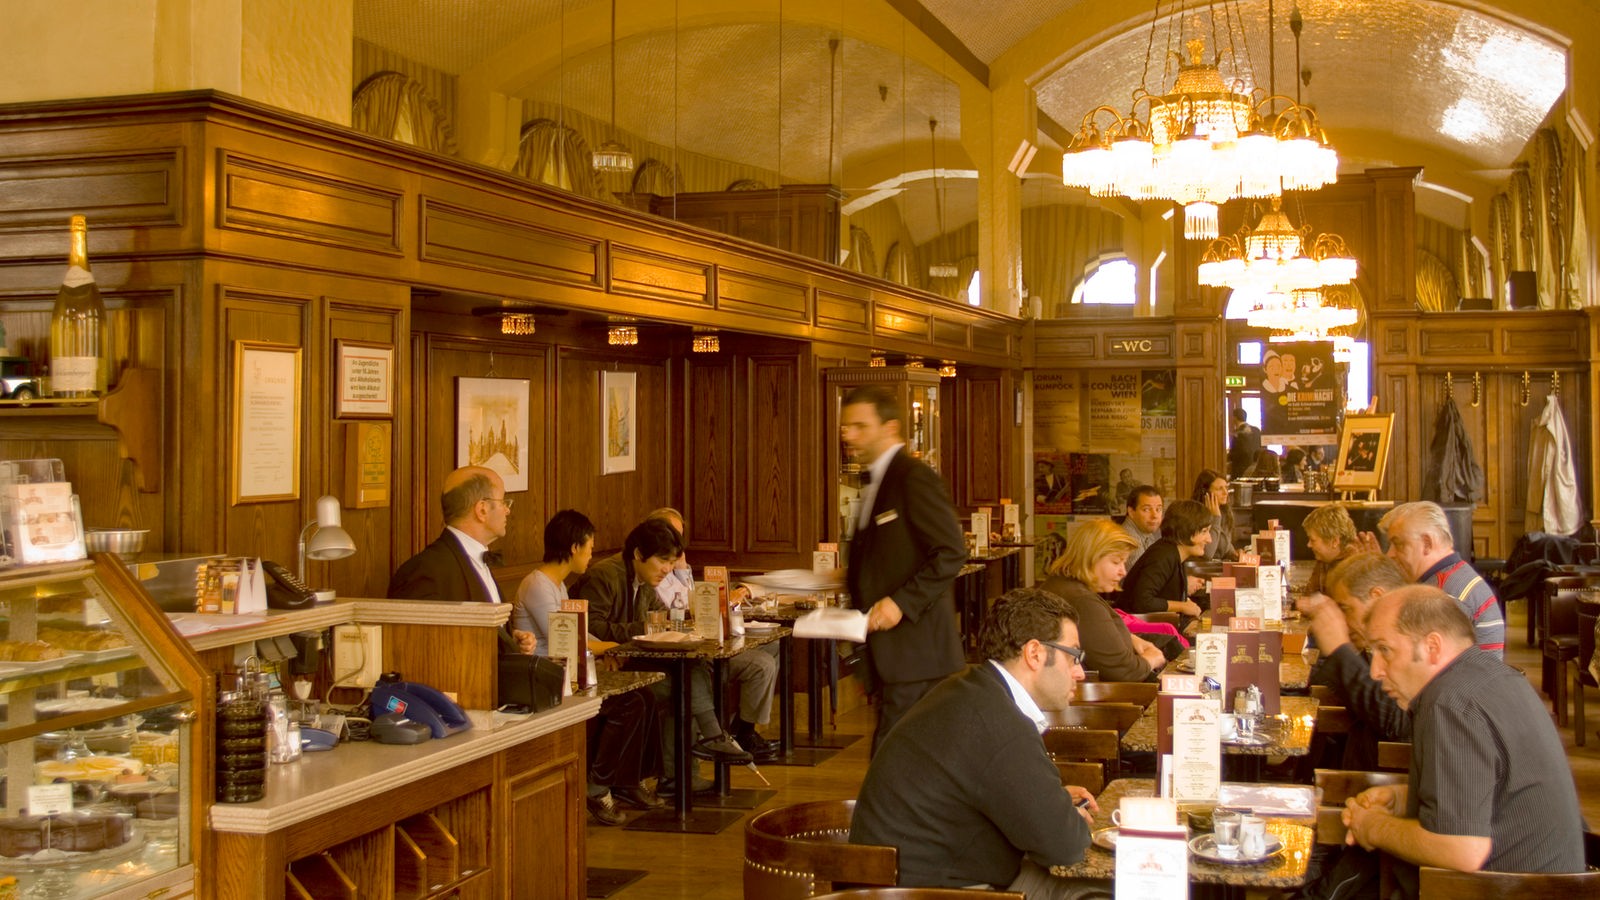 Innenraum des Wiener Café Schwarzenberg. Ein großer Raum mit hoher Decke. An den Tischen sitzen Gäste, die von schwarz livrierten Obern bedient werden.